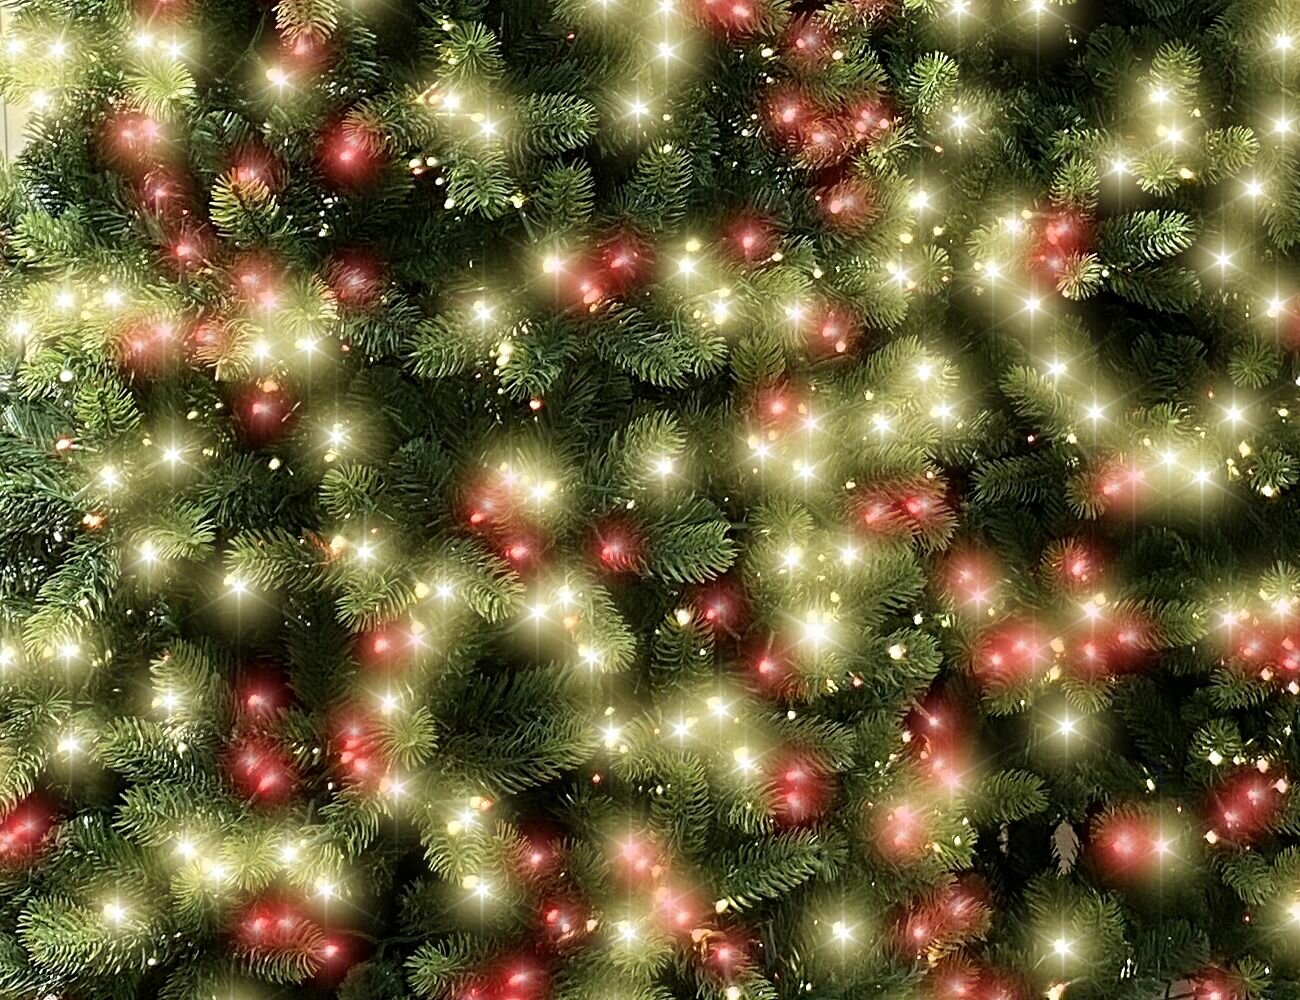 A Perfect Christmas Искусственная стройная елка с гирляндой Джорджия Slim 228 см, 2000 красных/теплых белых ламп, литая + ПВХ 31GEOR228DL